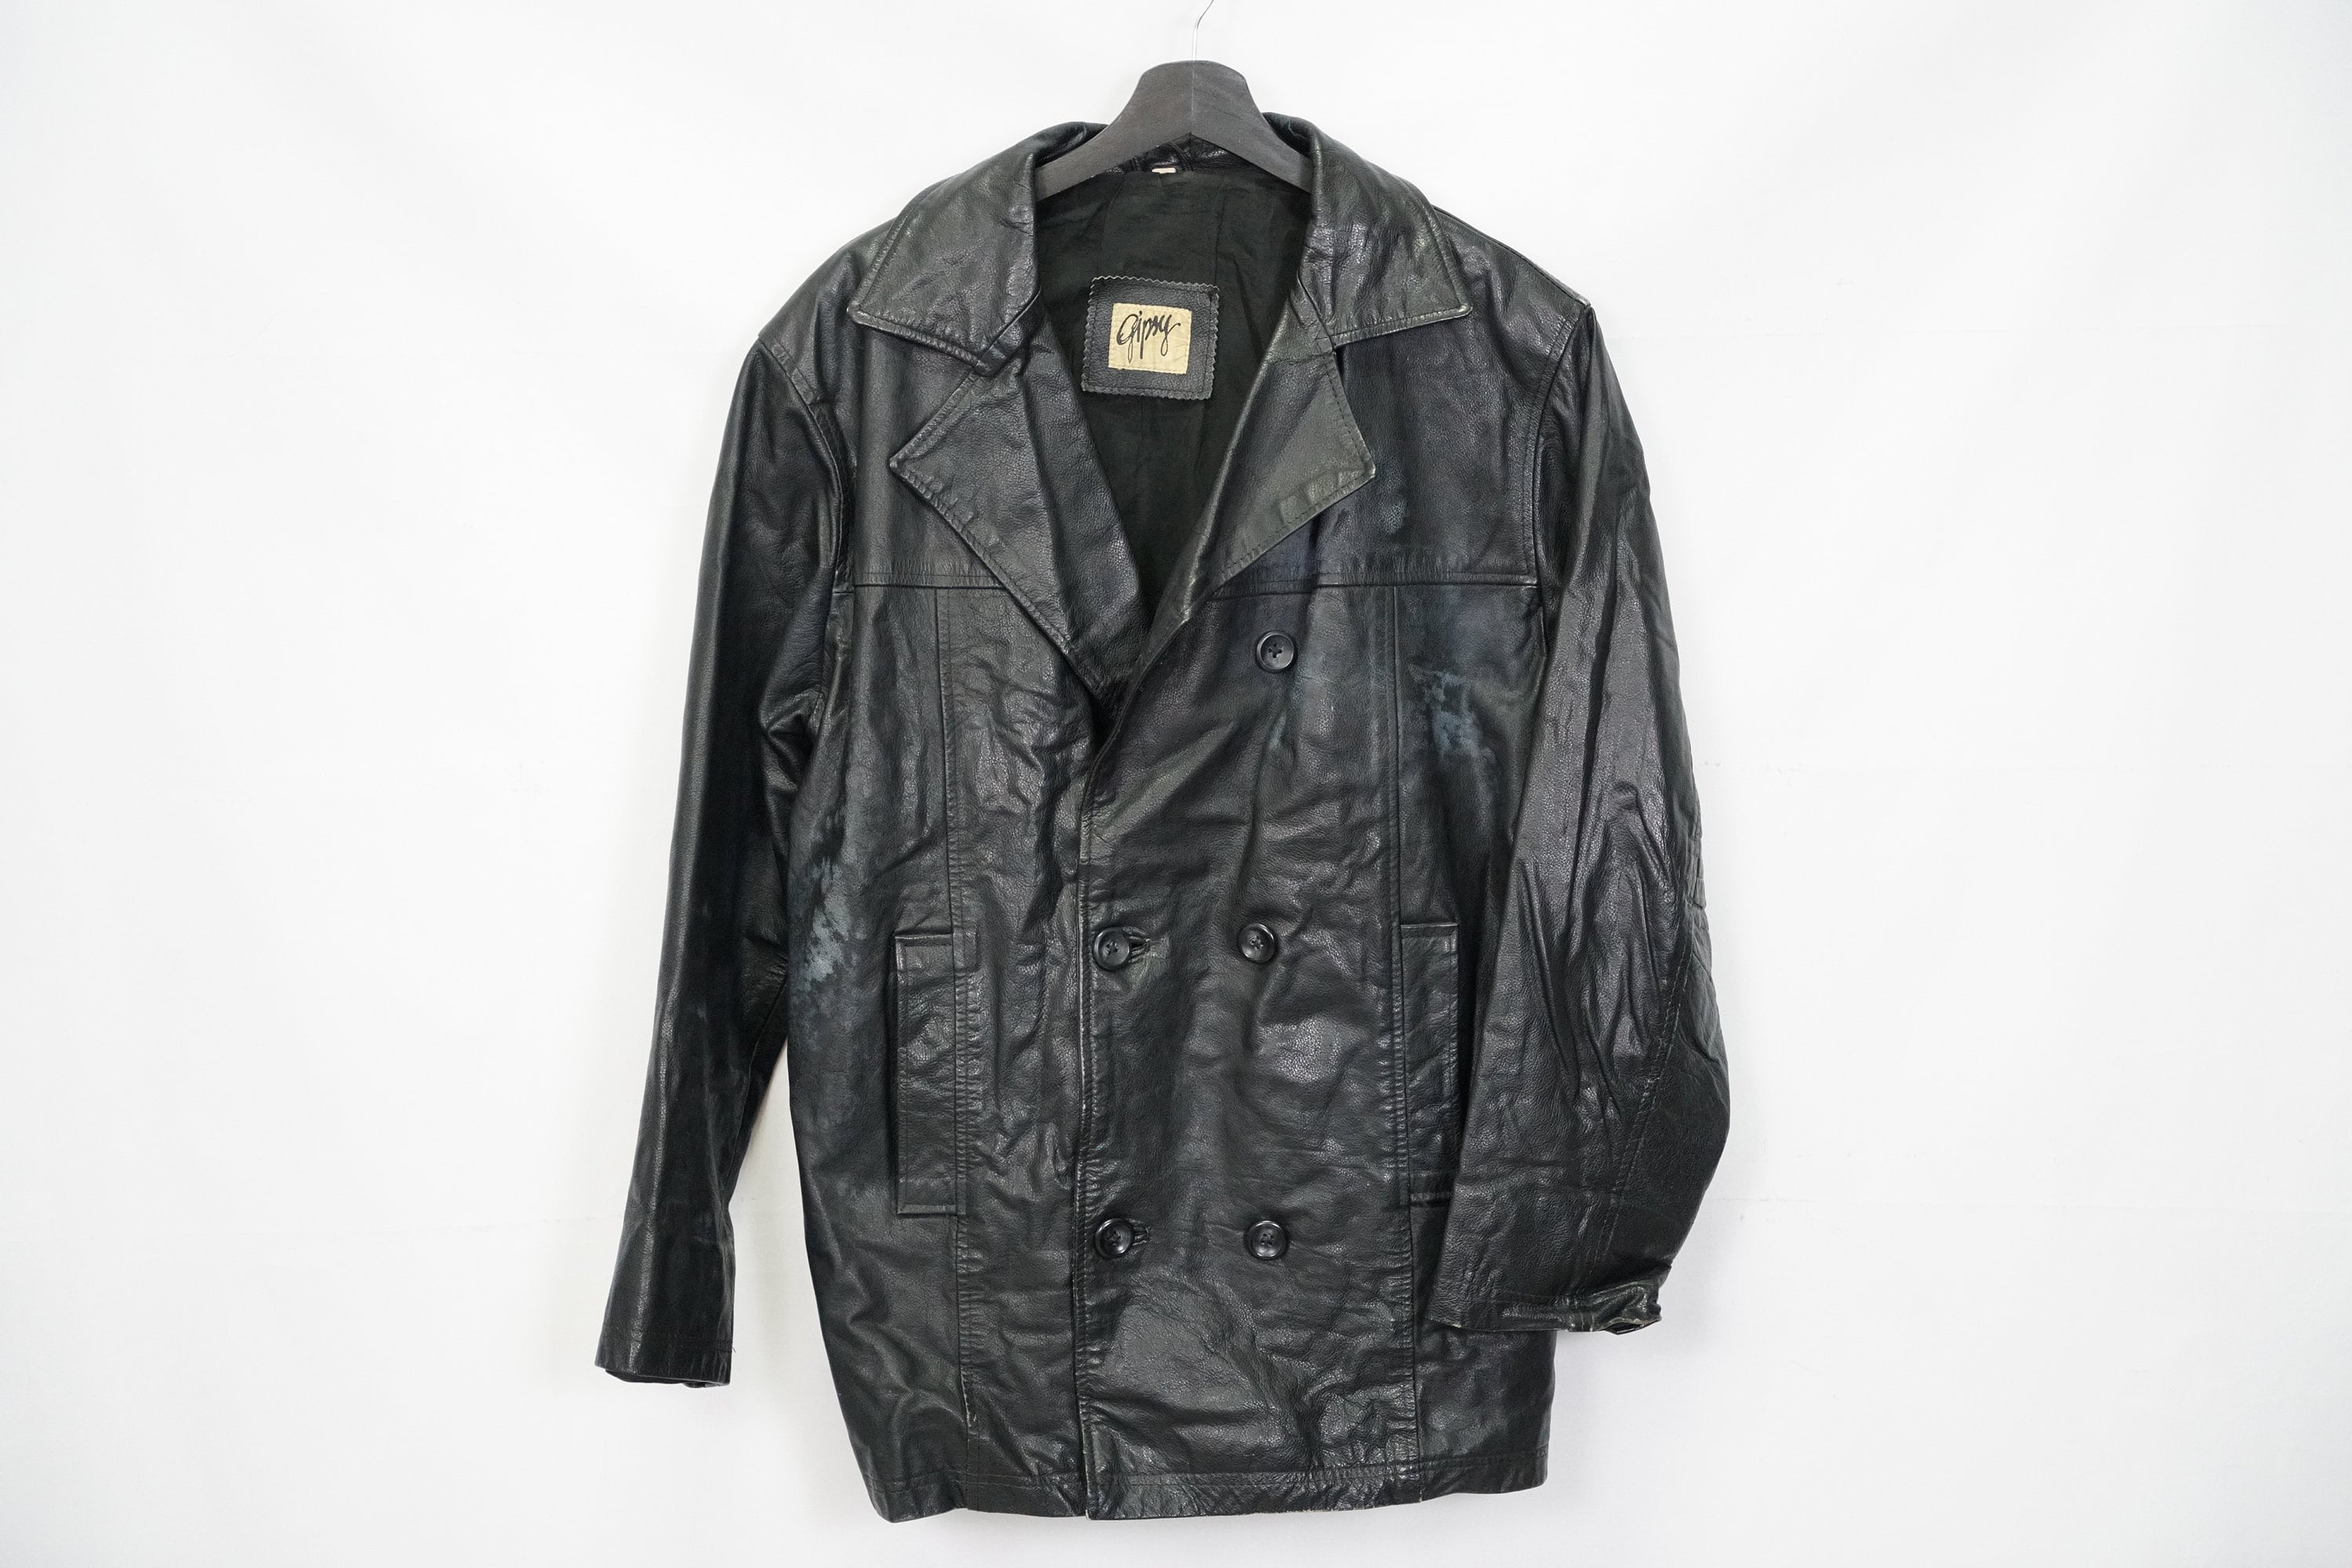 Israel - Etsy Jacket Gipsy Leather